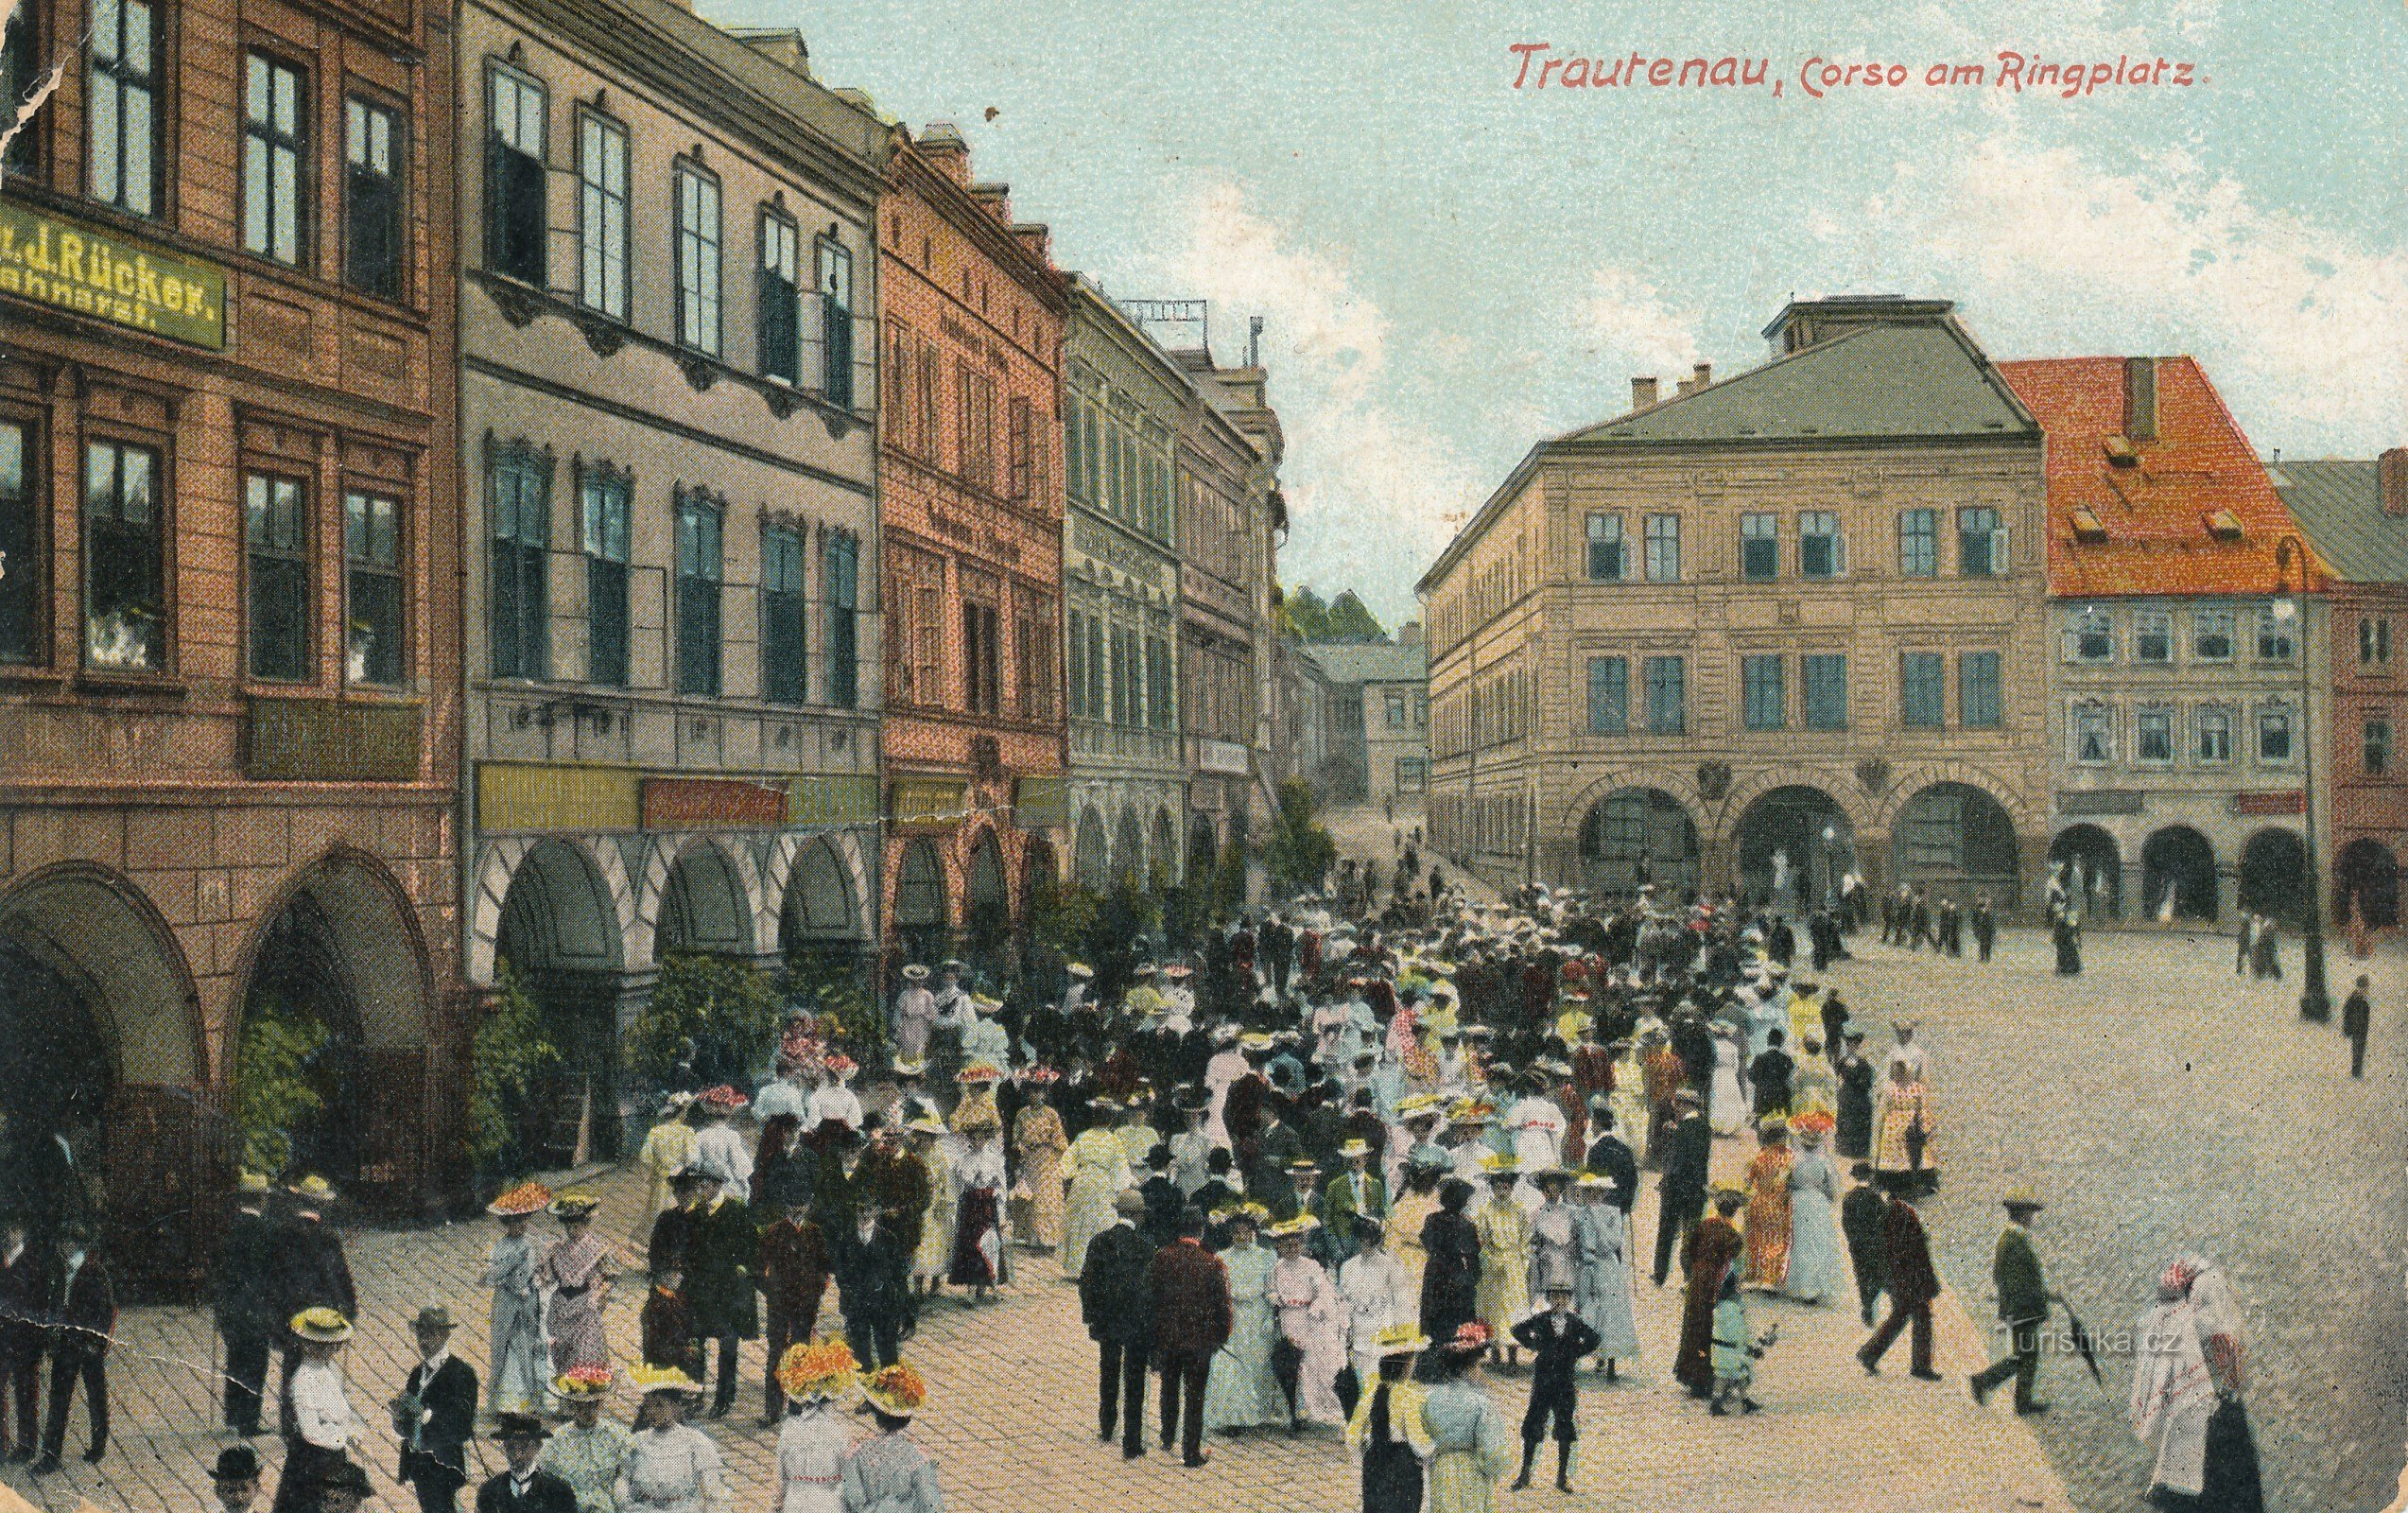 Historický snímek korza na Krakonošově náměstí v Trutnově